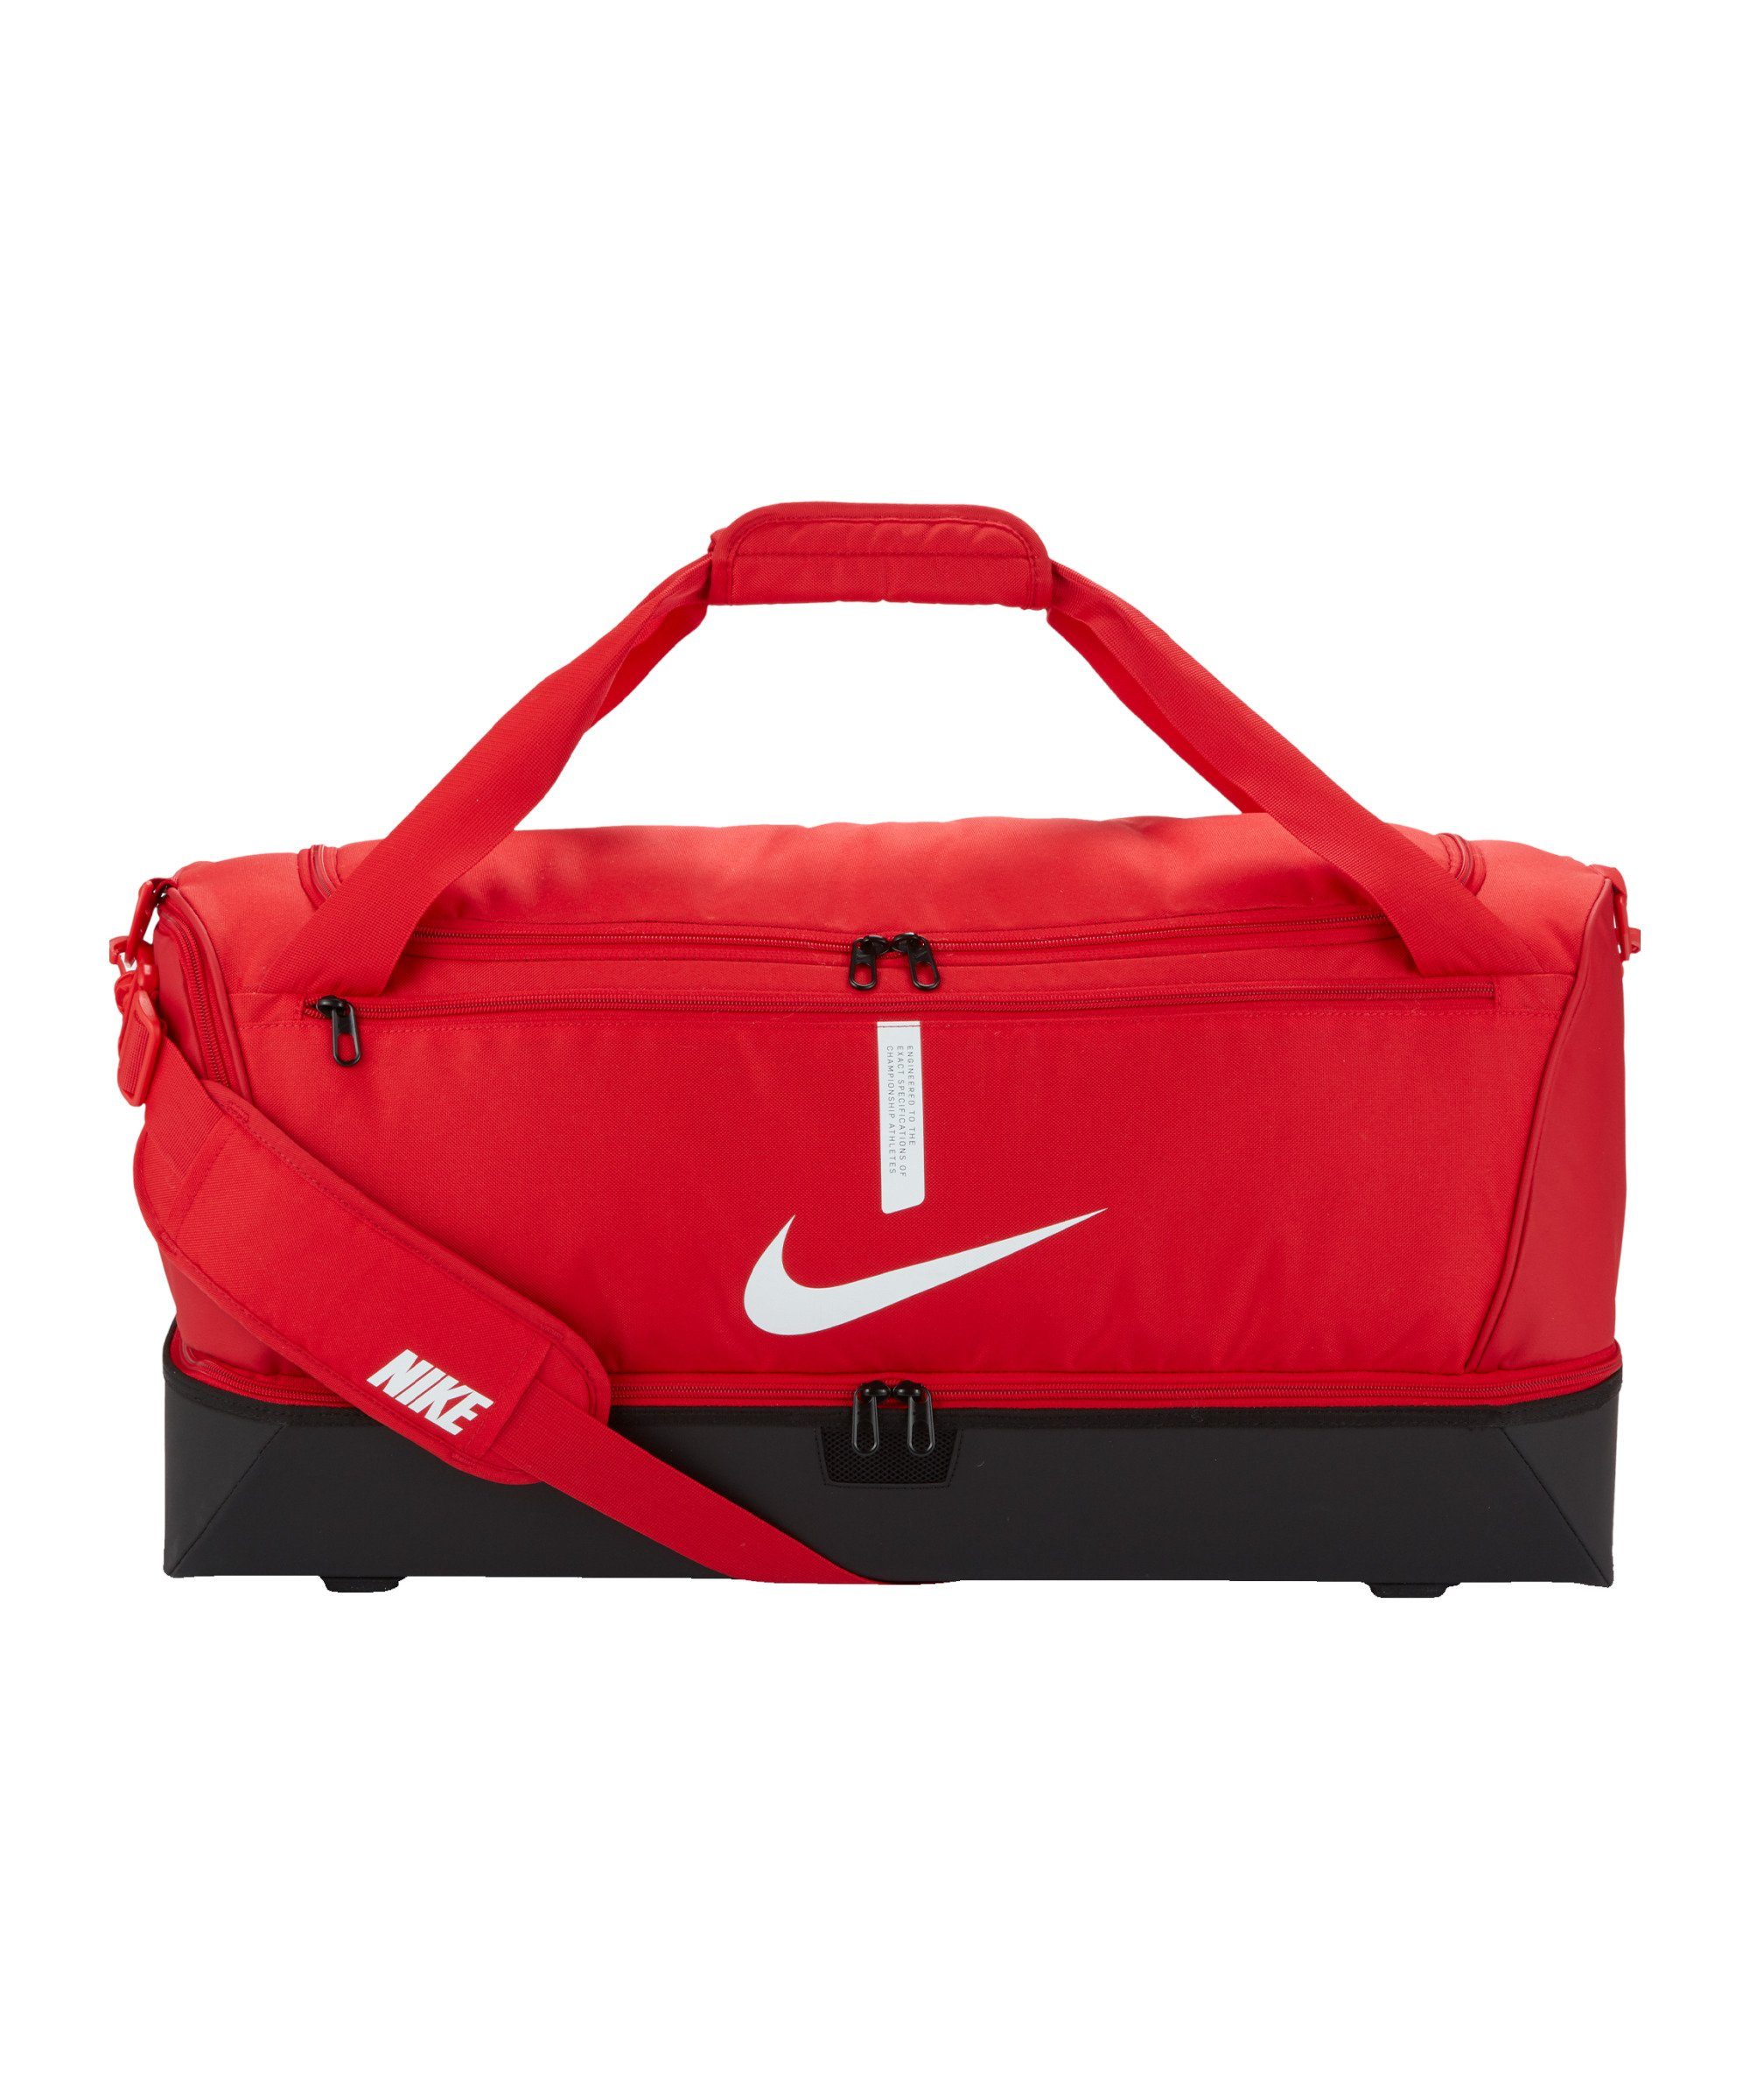 Schulter Team Tasche Hardcase Freizeittasche rotschwarzweiss Academy Nike Large,